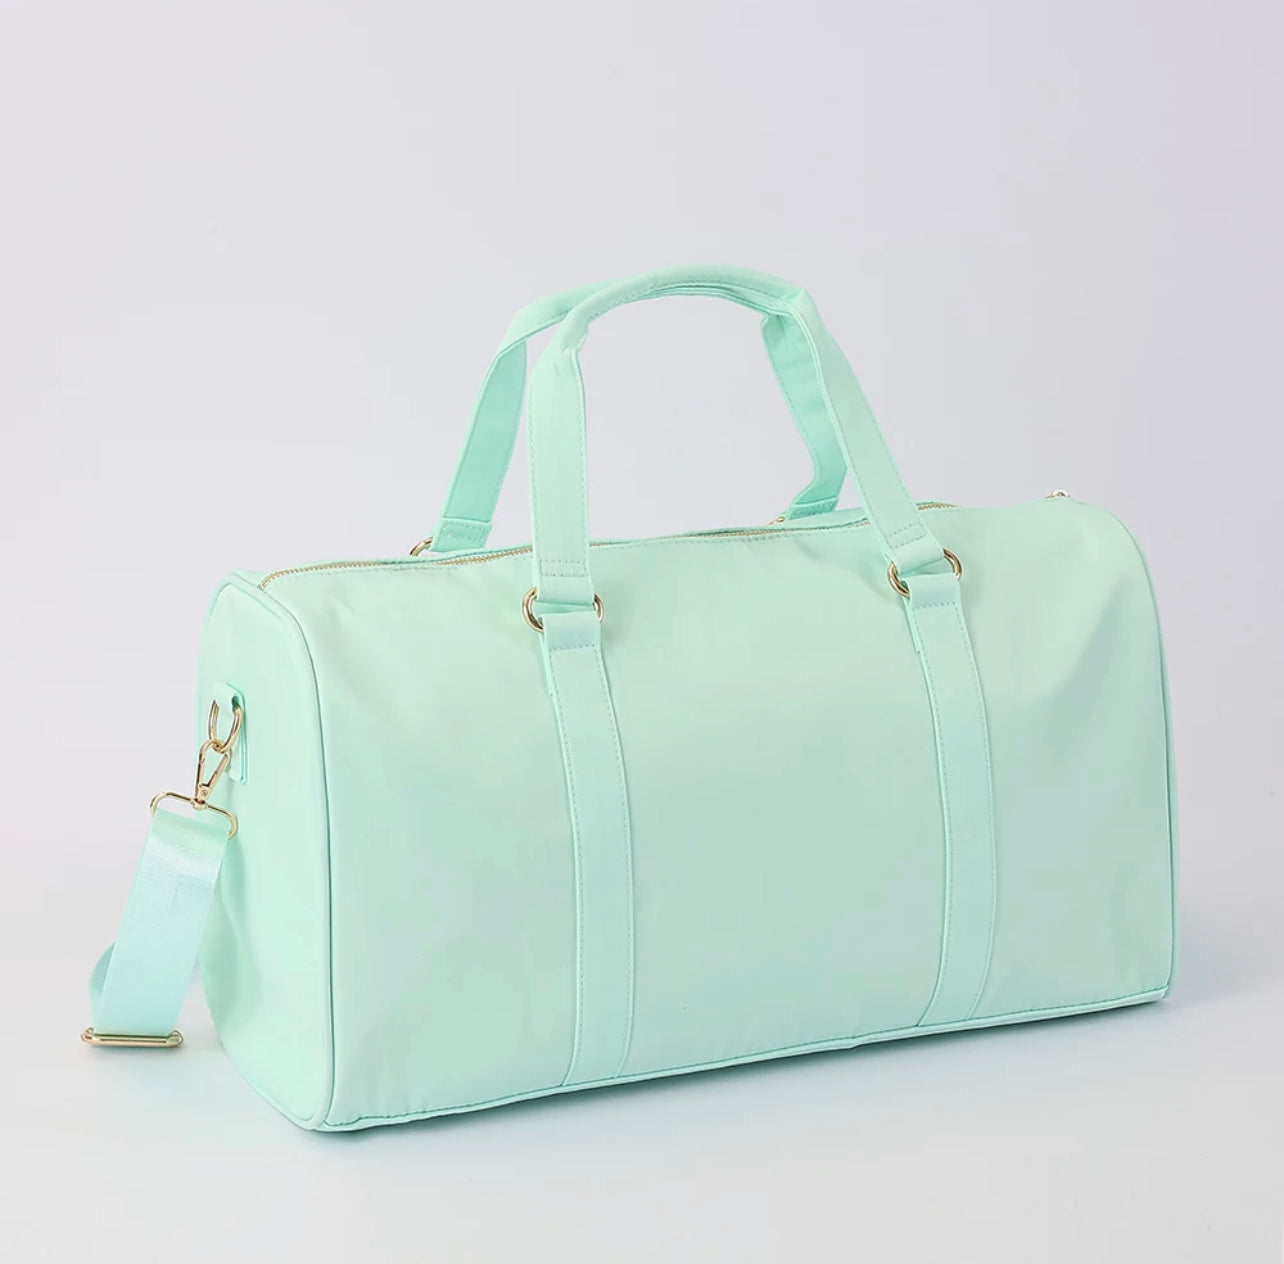 Nylon Ana Bubble Duffle Bag, Handbags